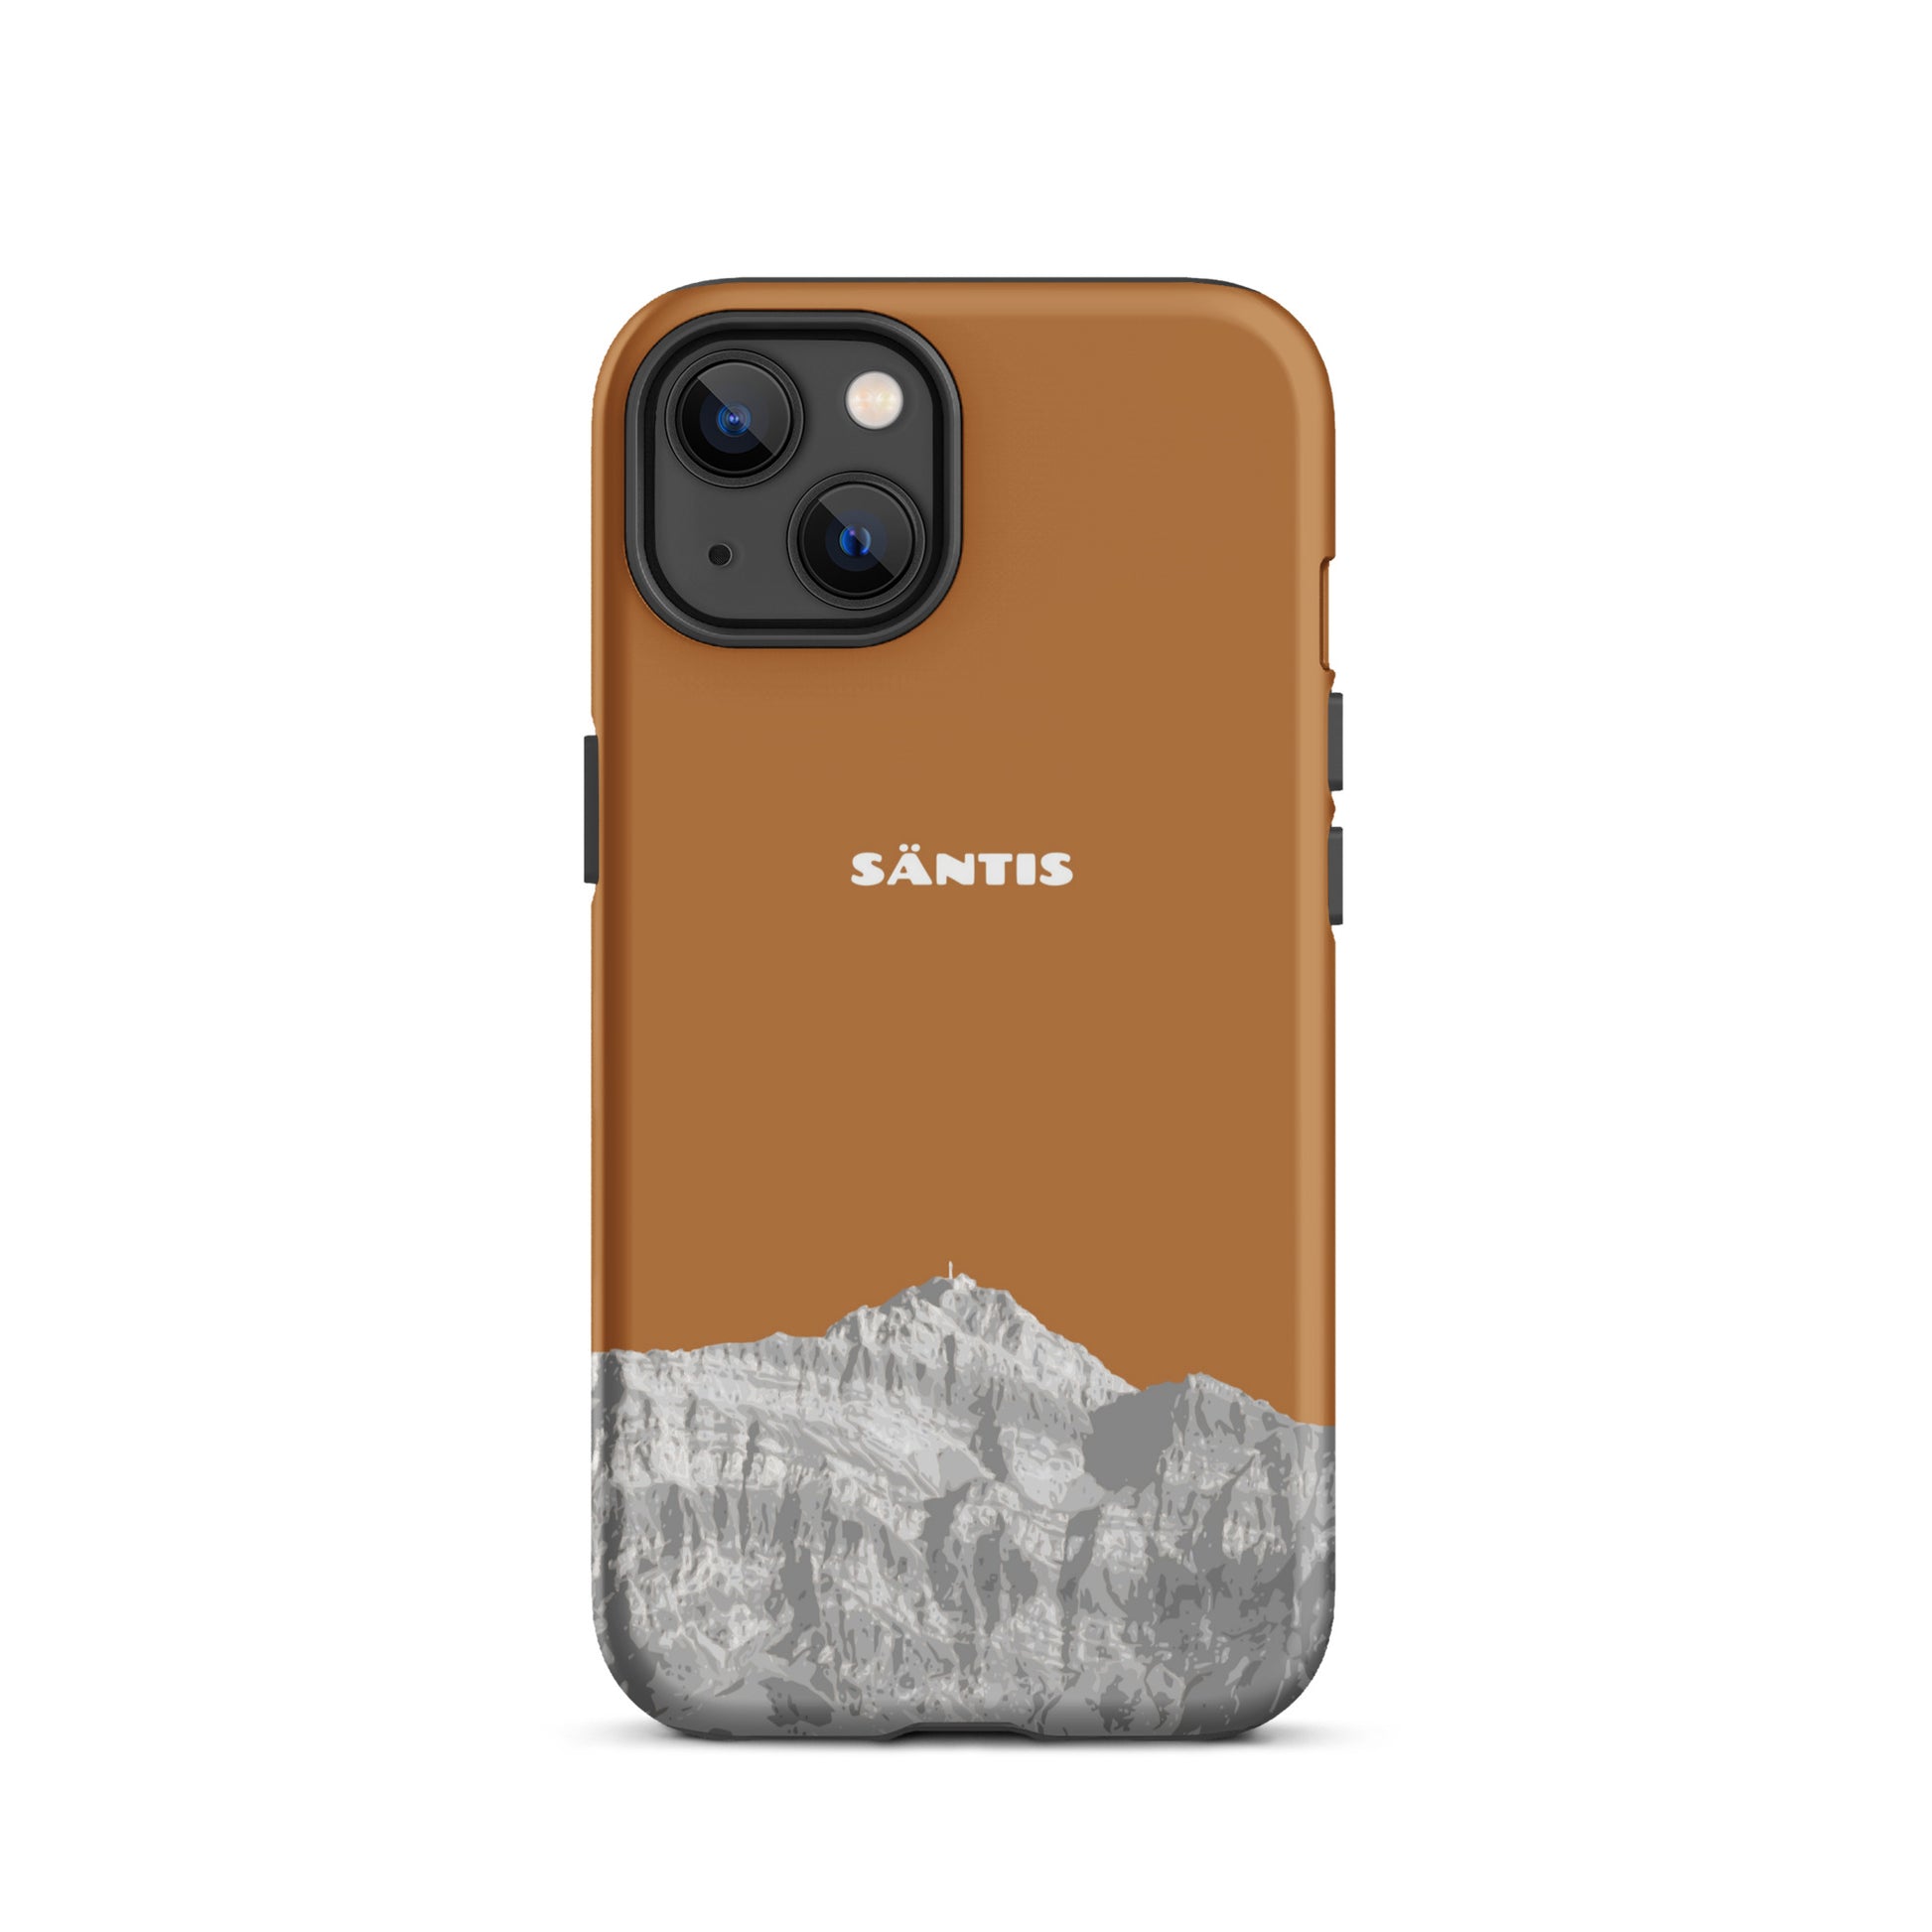 Hülle für das iPhone 13 von Apple in der Farbe Kupfer, dass den Säntis im Alpstein zeigt.